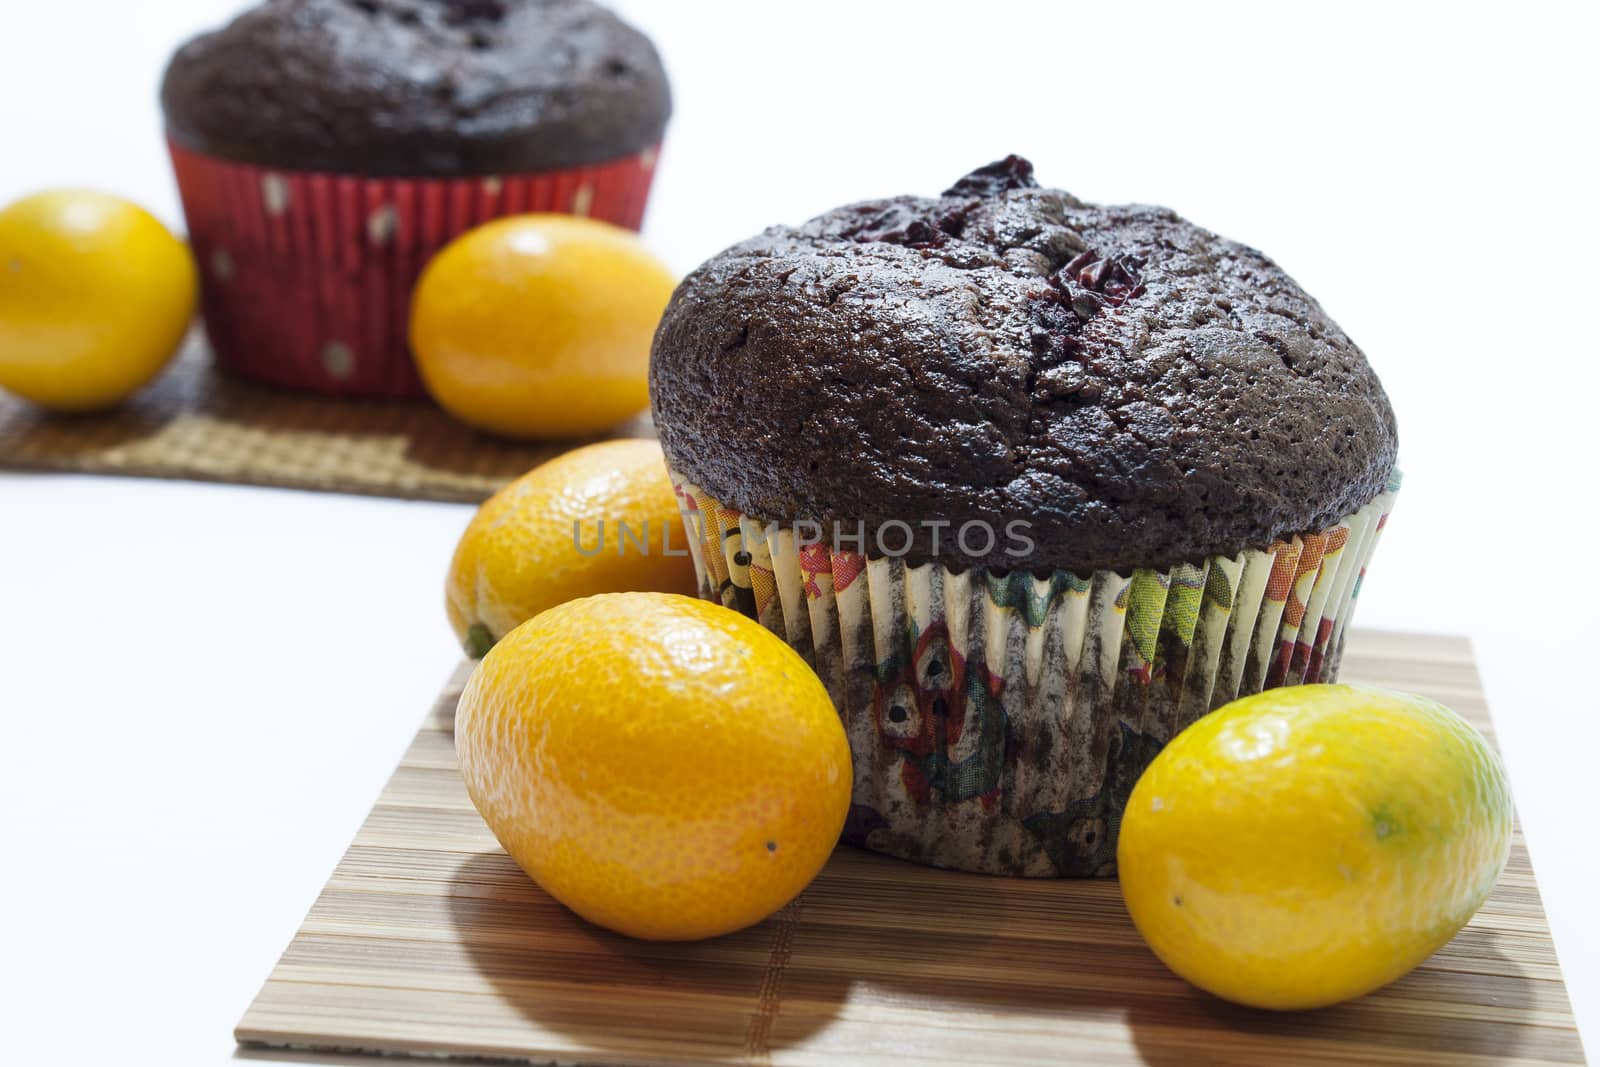 Chocolate muffins and kumquat by zlajaphoto